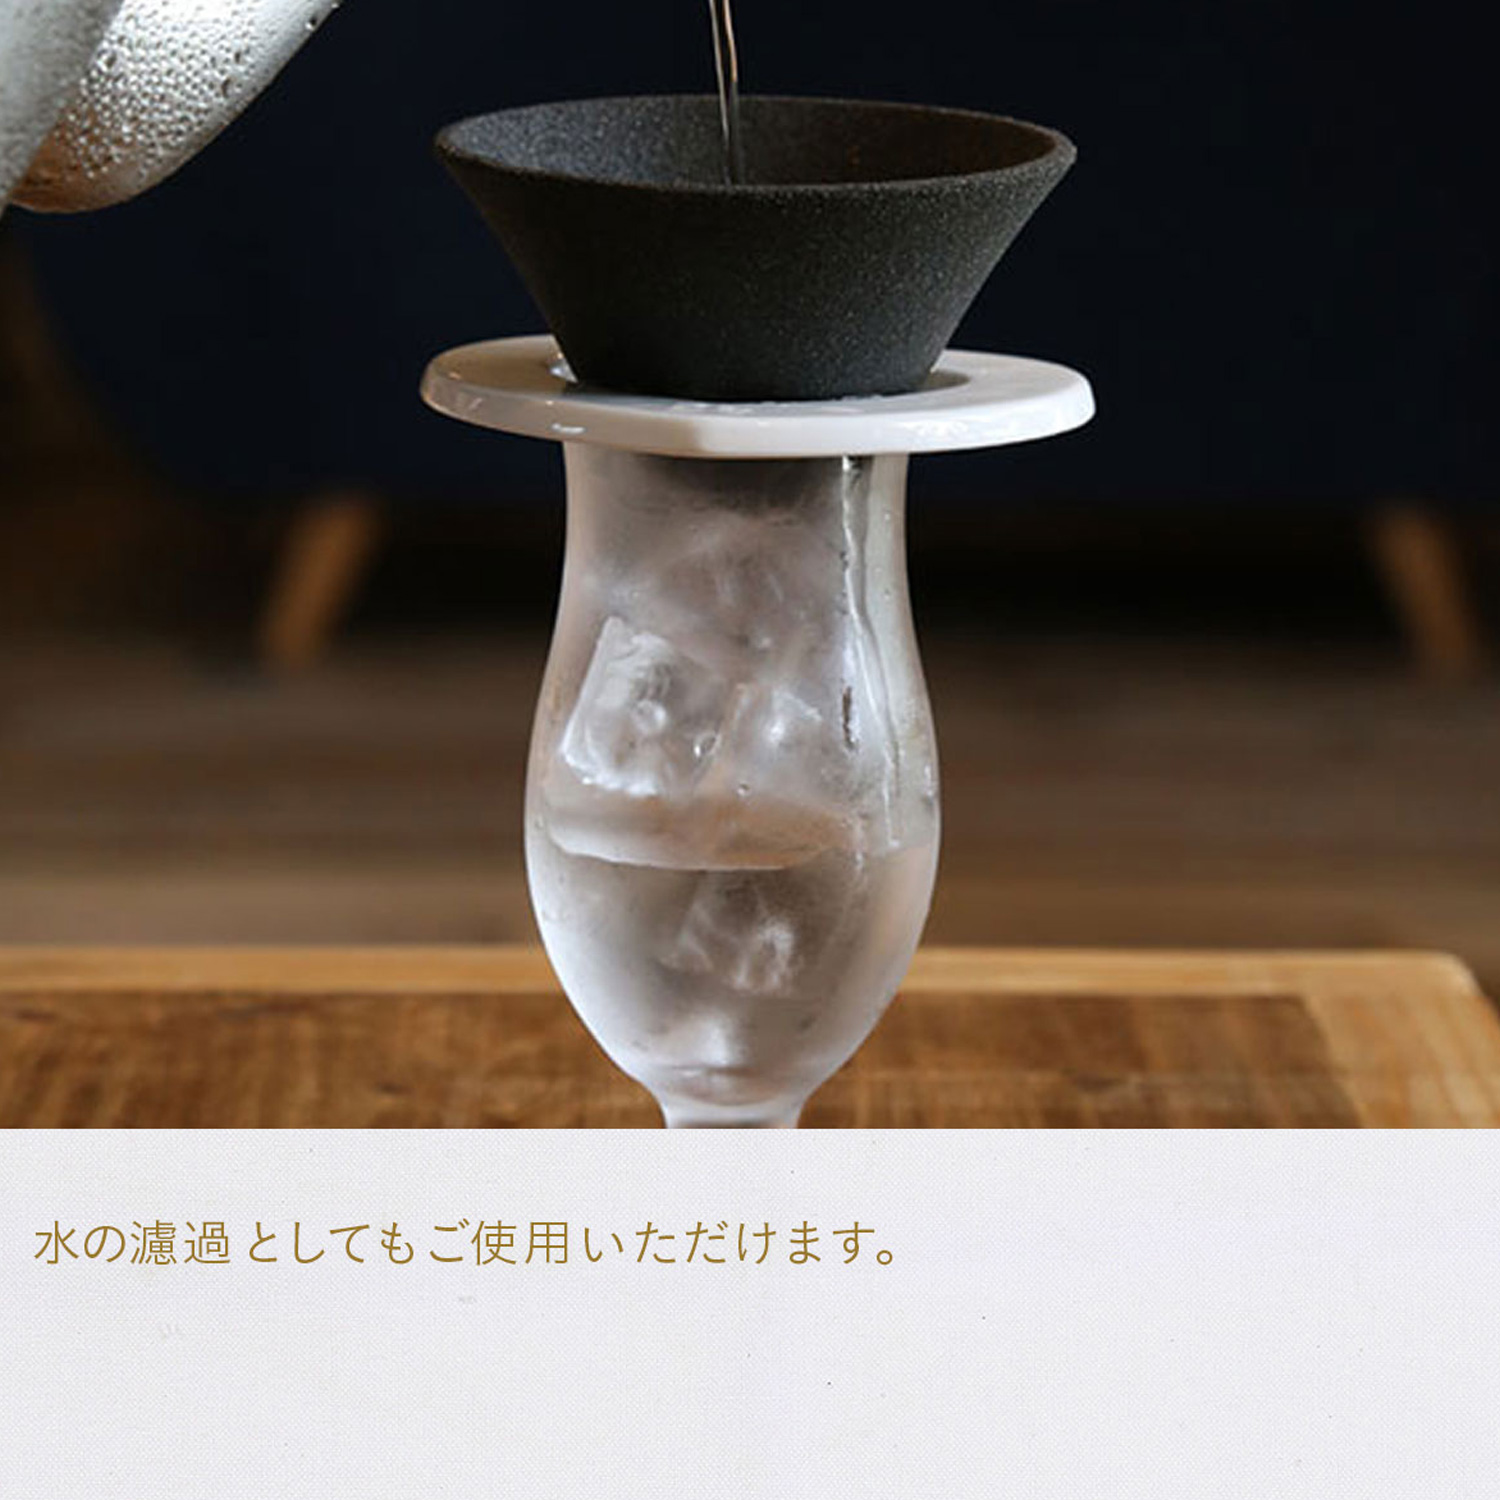 有田焼 コーヒーフィルター セラミックフィルター 001 フィルタ単品